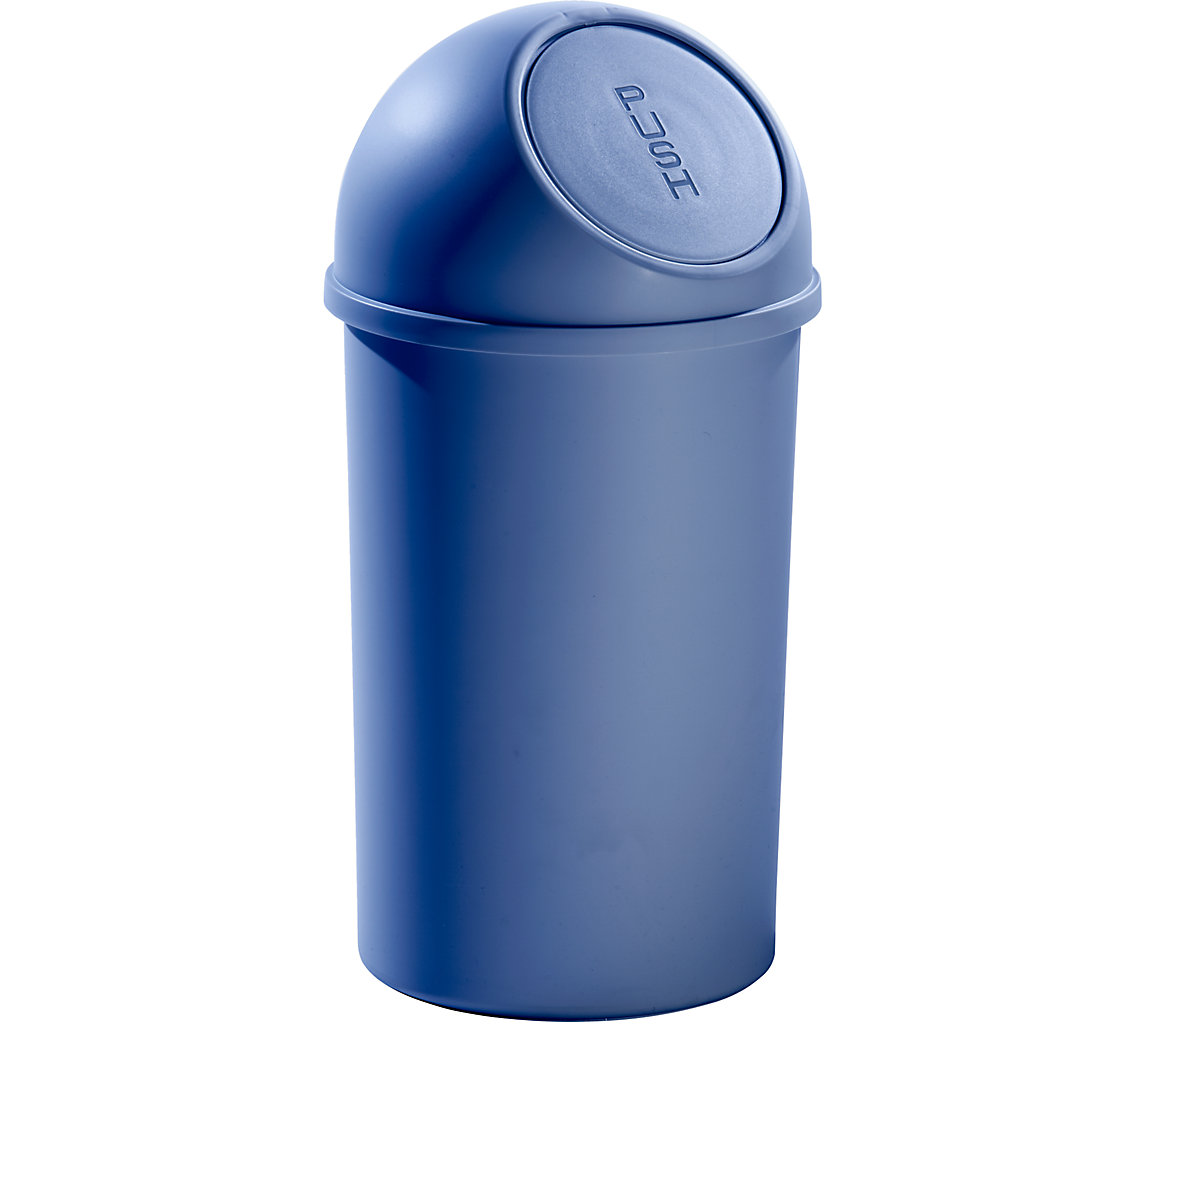 Recipiente de lixo Push em plástico – helit, capacidade 25 l, embalagem de 3 unid., AxØ 615 x 315 mm, azul-3